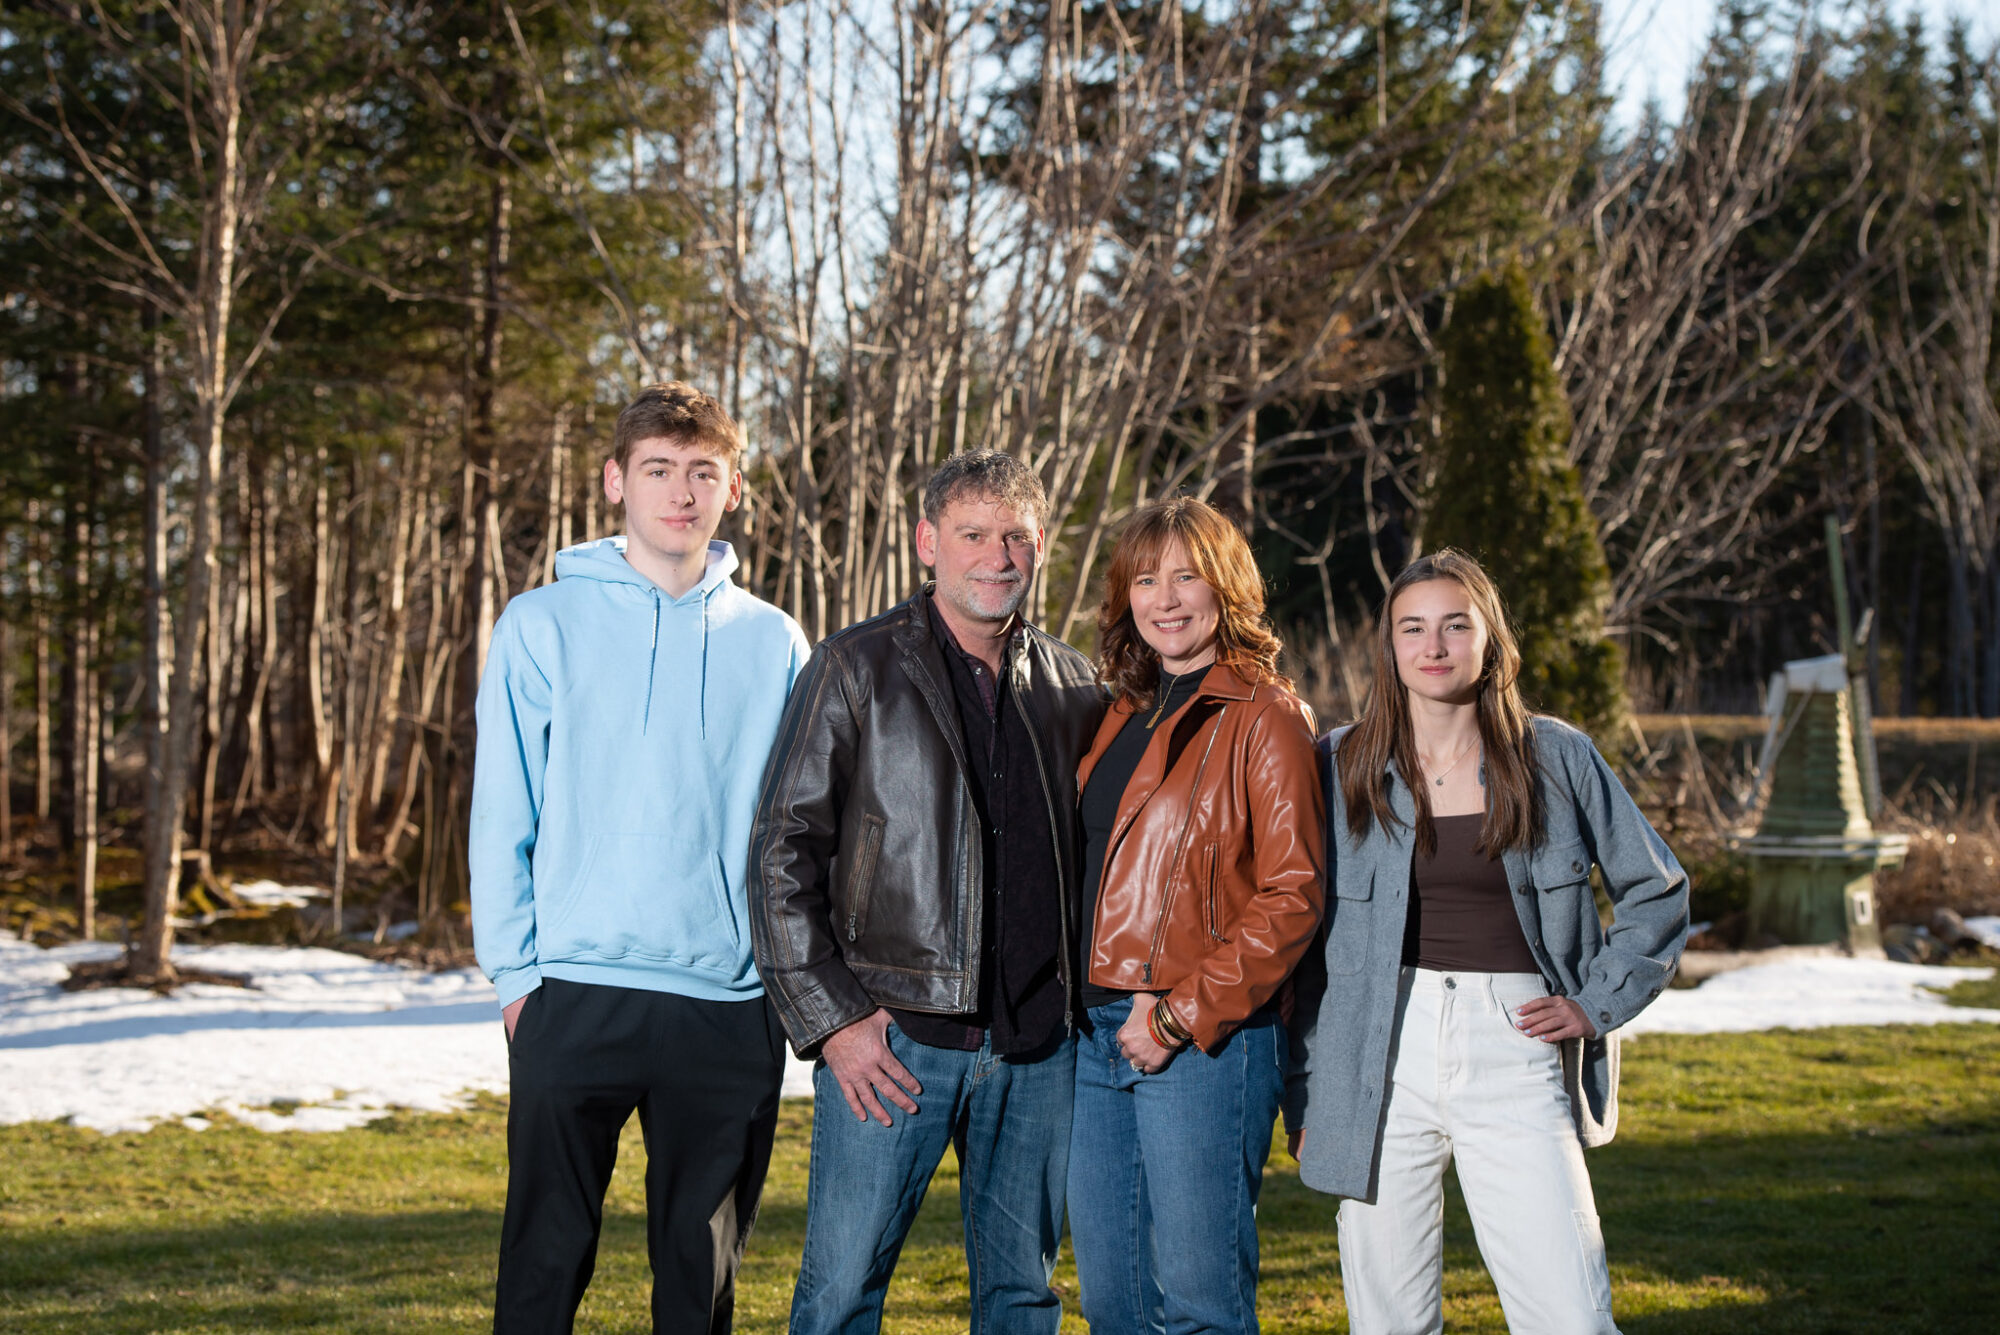 Halifax family photos